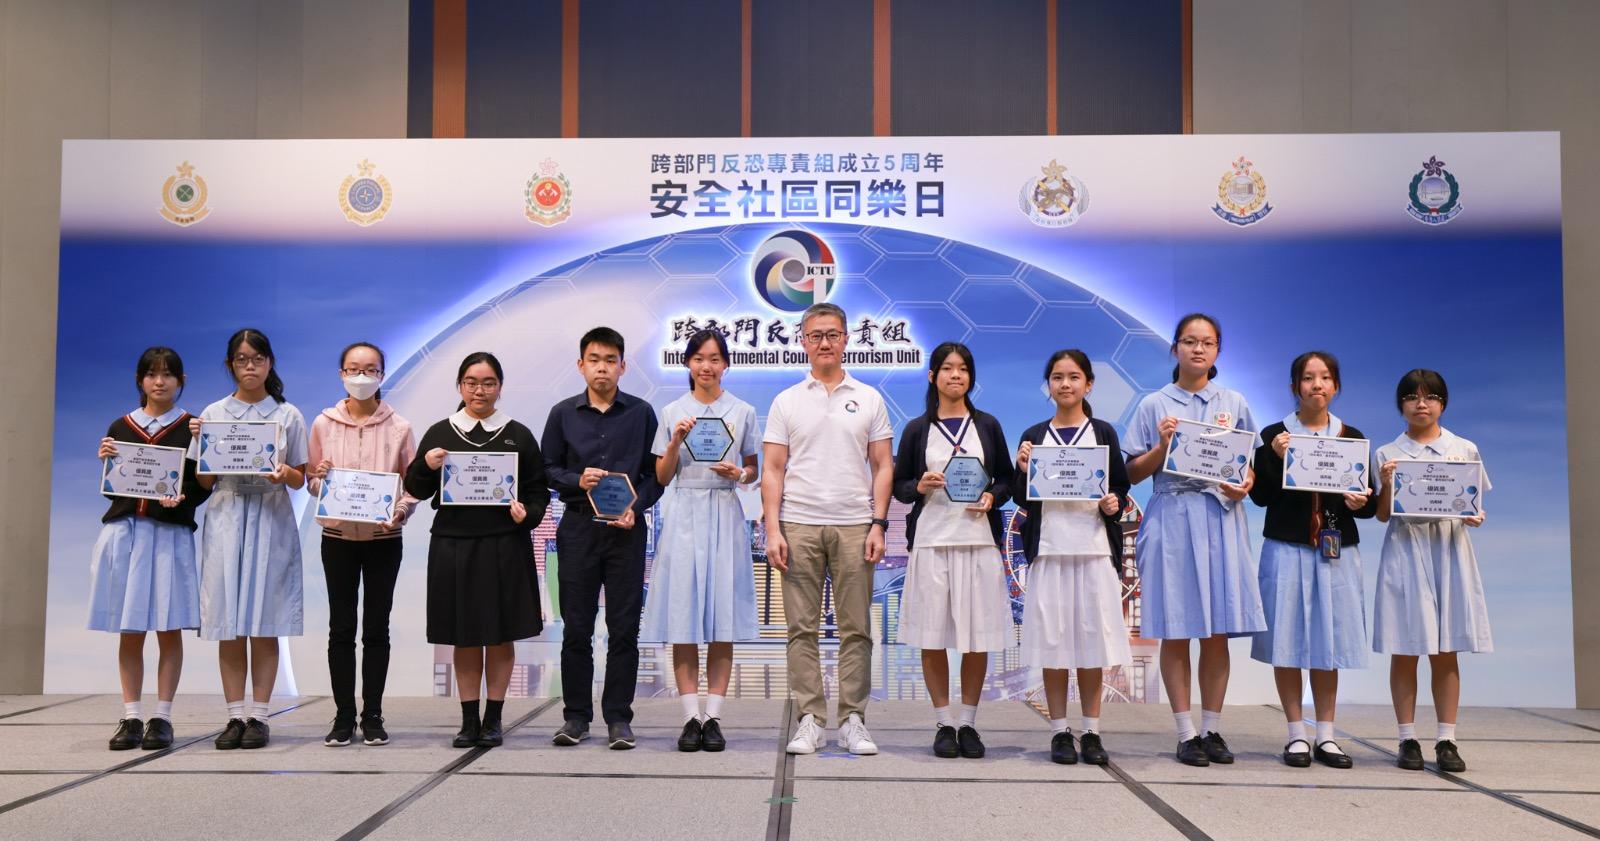 跨部门反恐专责组今日（四月二十九日）在香港科学园举办「安全社区同乐日」。图示警务处处长萧泽颐颁奖予「5周年填色/广告设计比赛」得奖者。